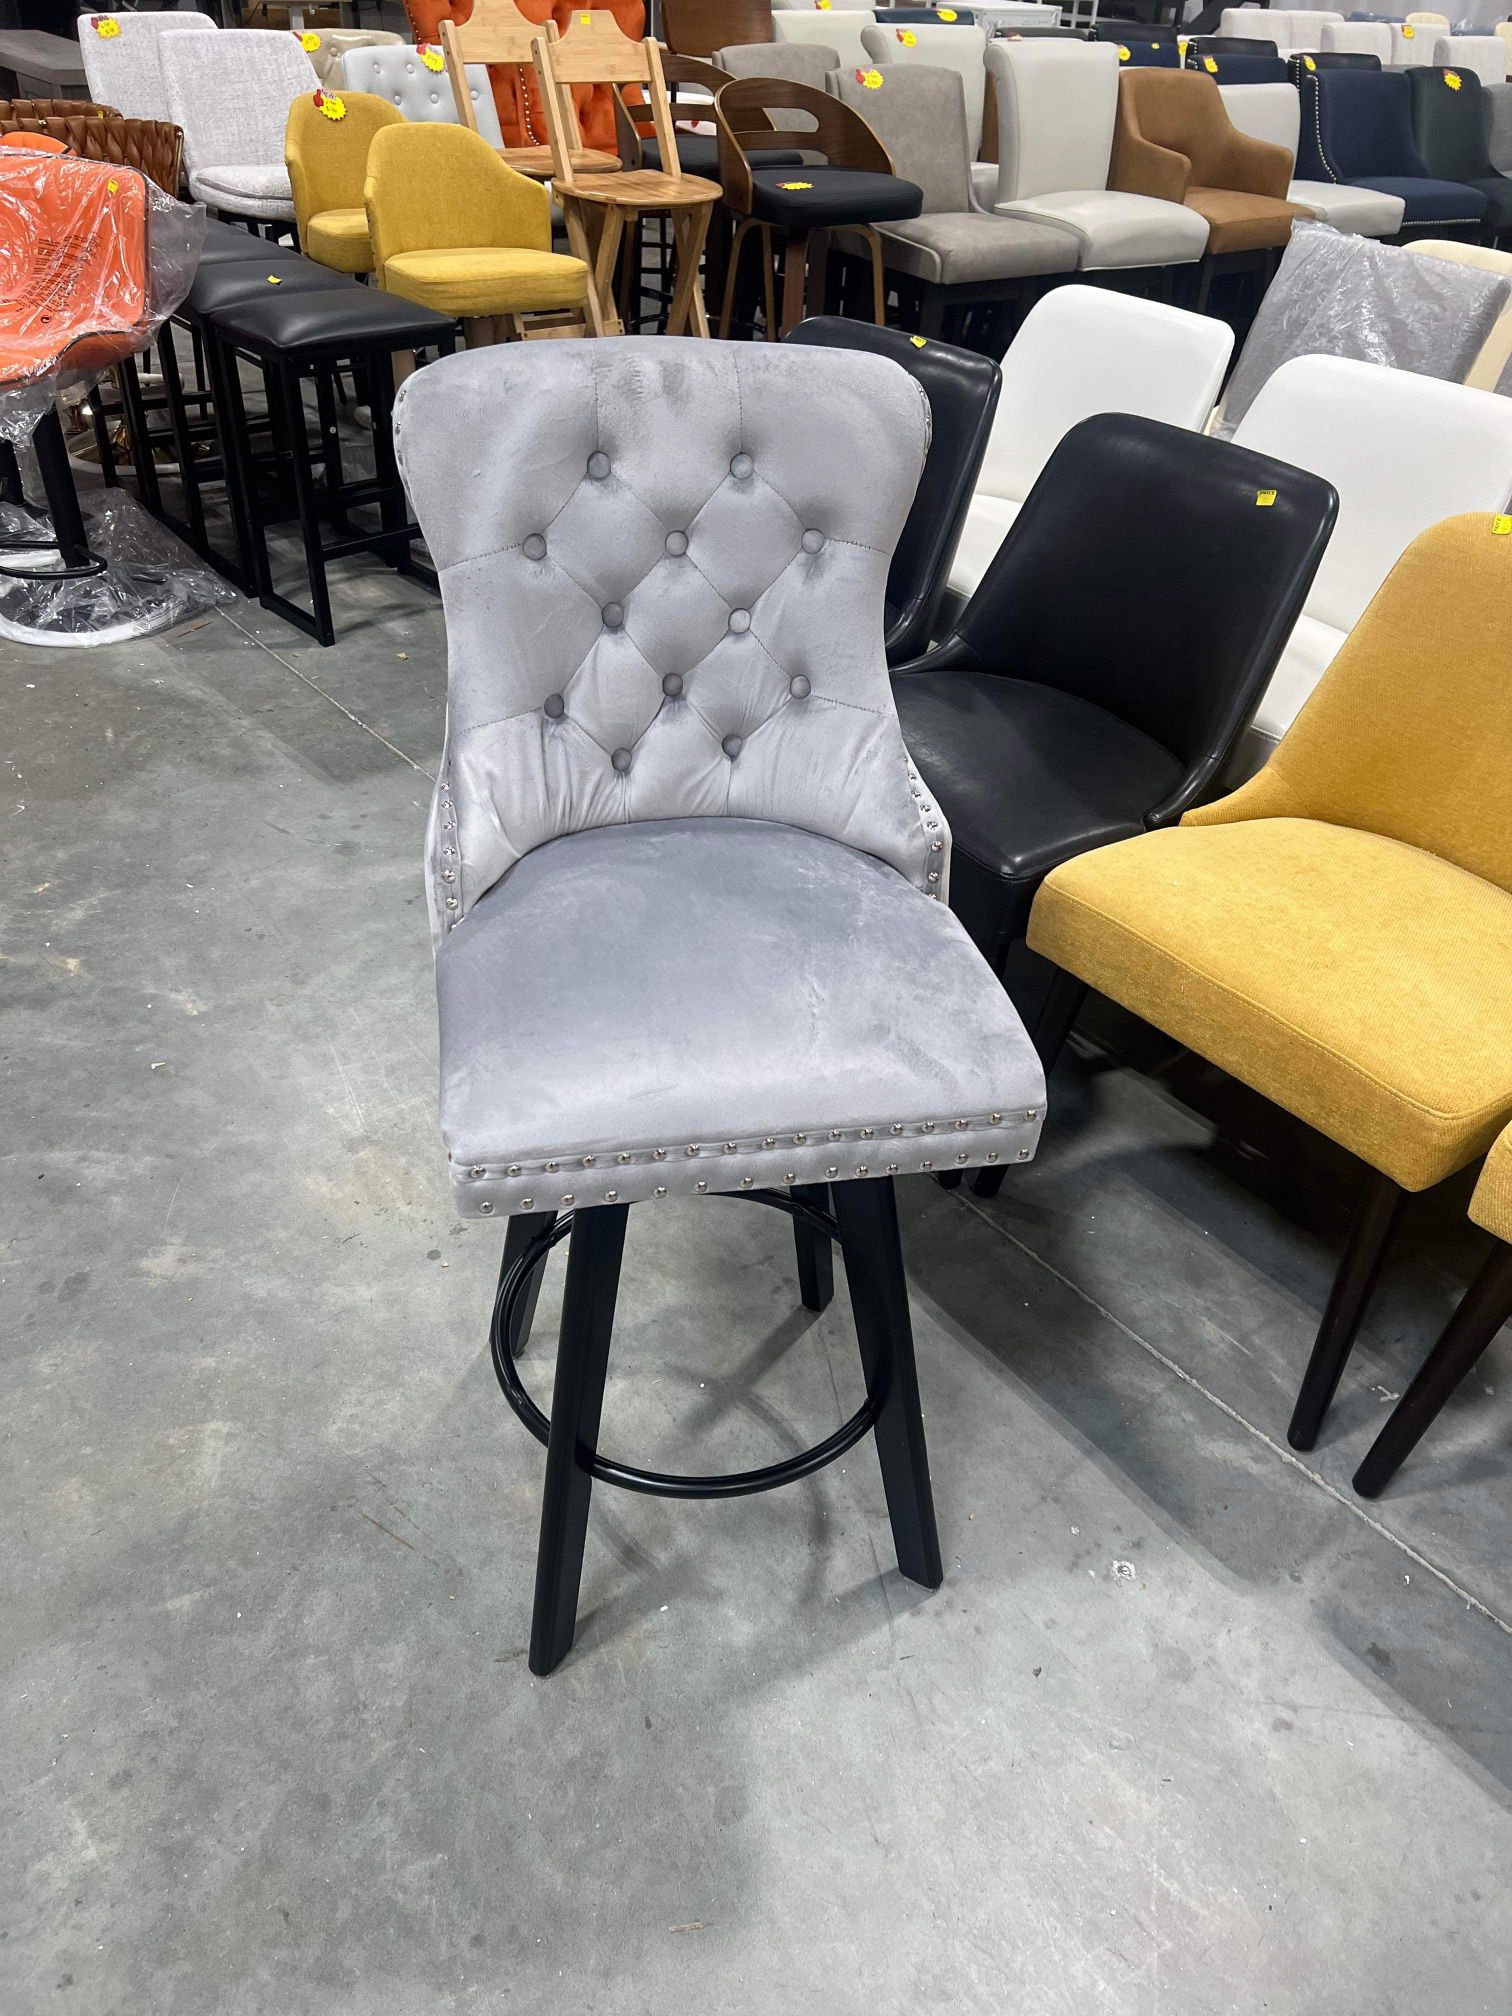 ORRD Swivel Bar Stool, Modern Velvet Button Tufted Upholstered Counter Height Chair(only one)